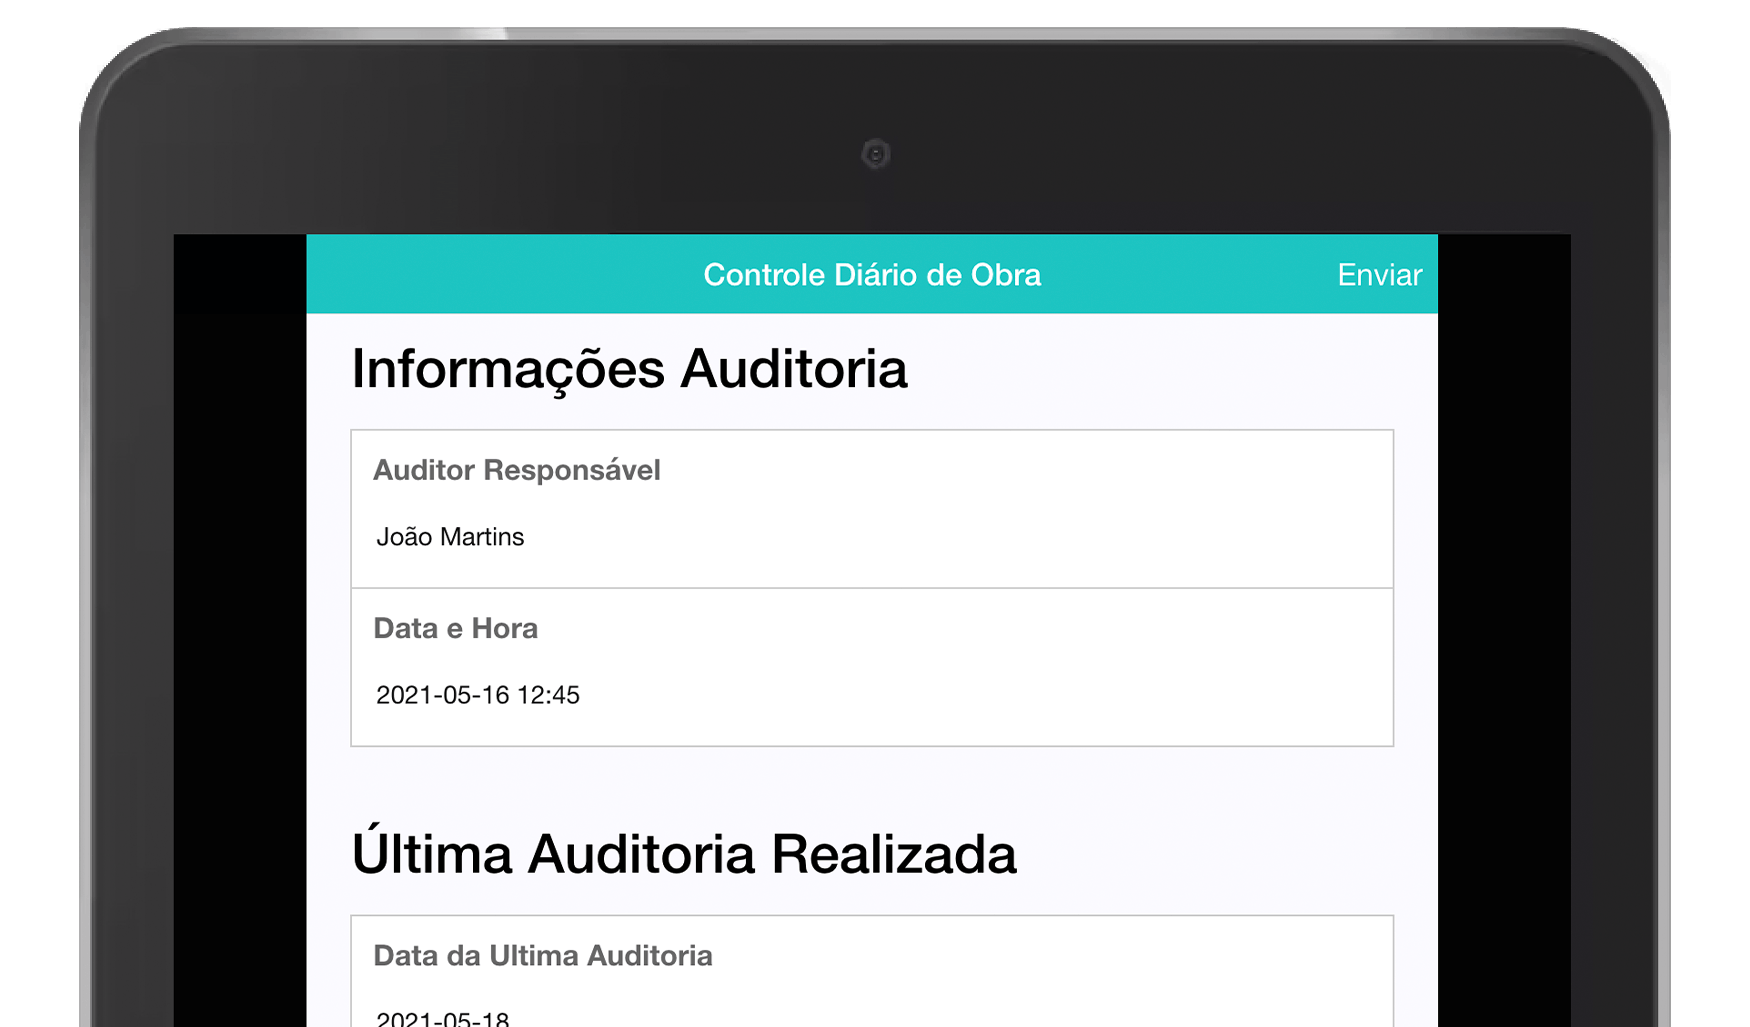 MoreApp Controle Diário de Obra App